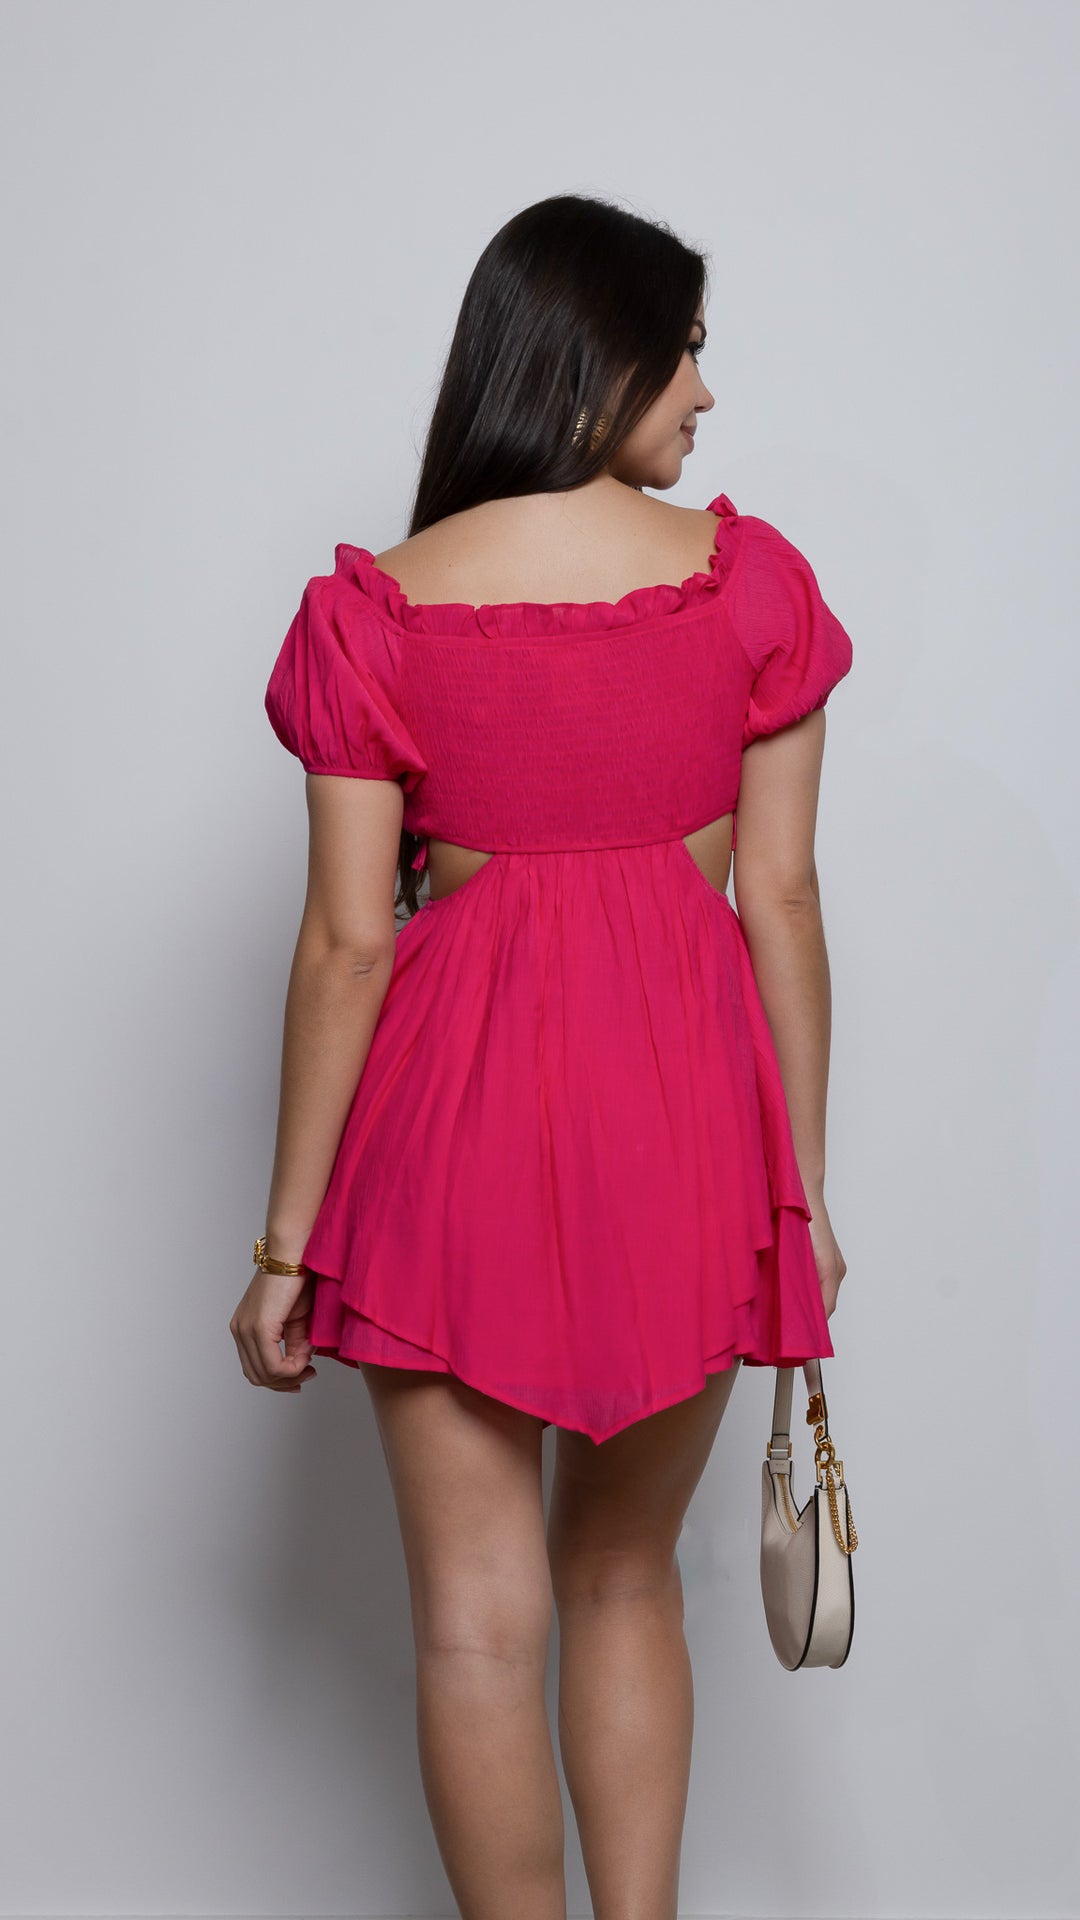 Clari Mini dress in Hot Pink